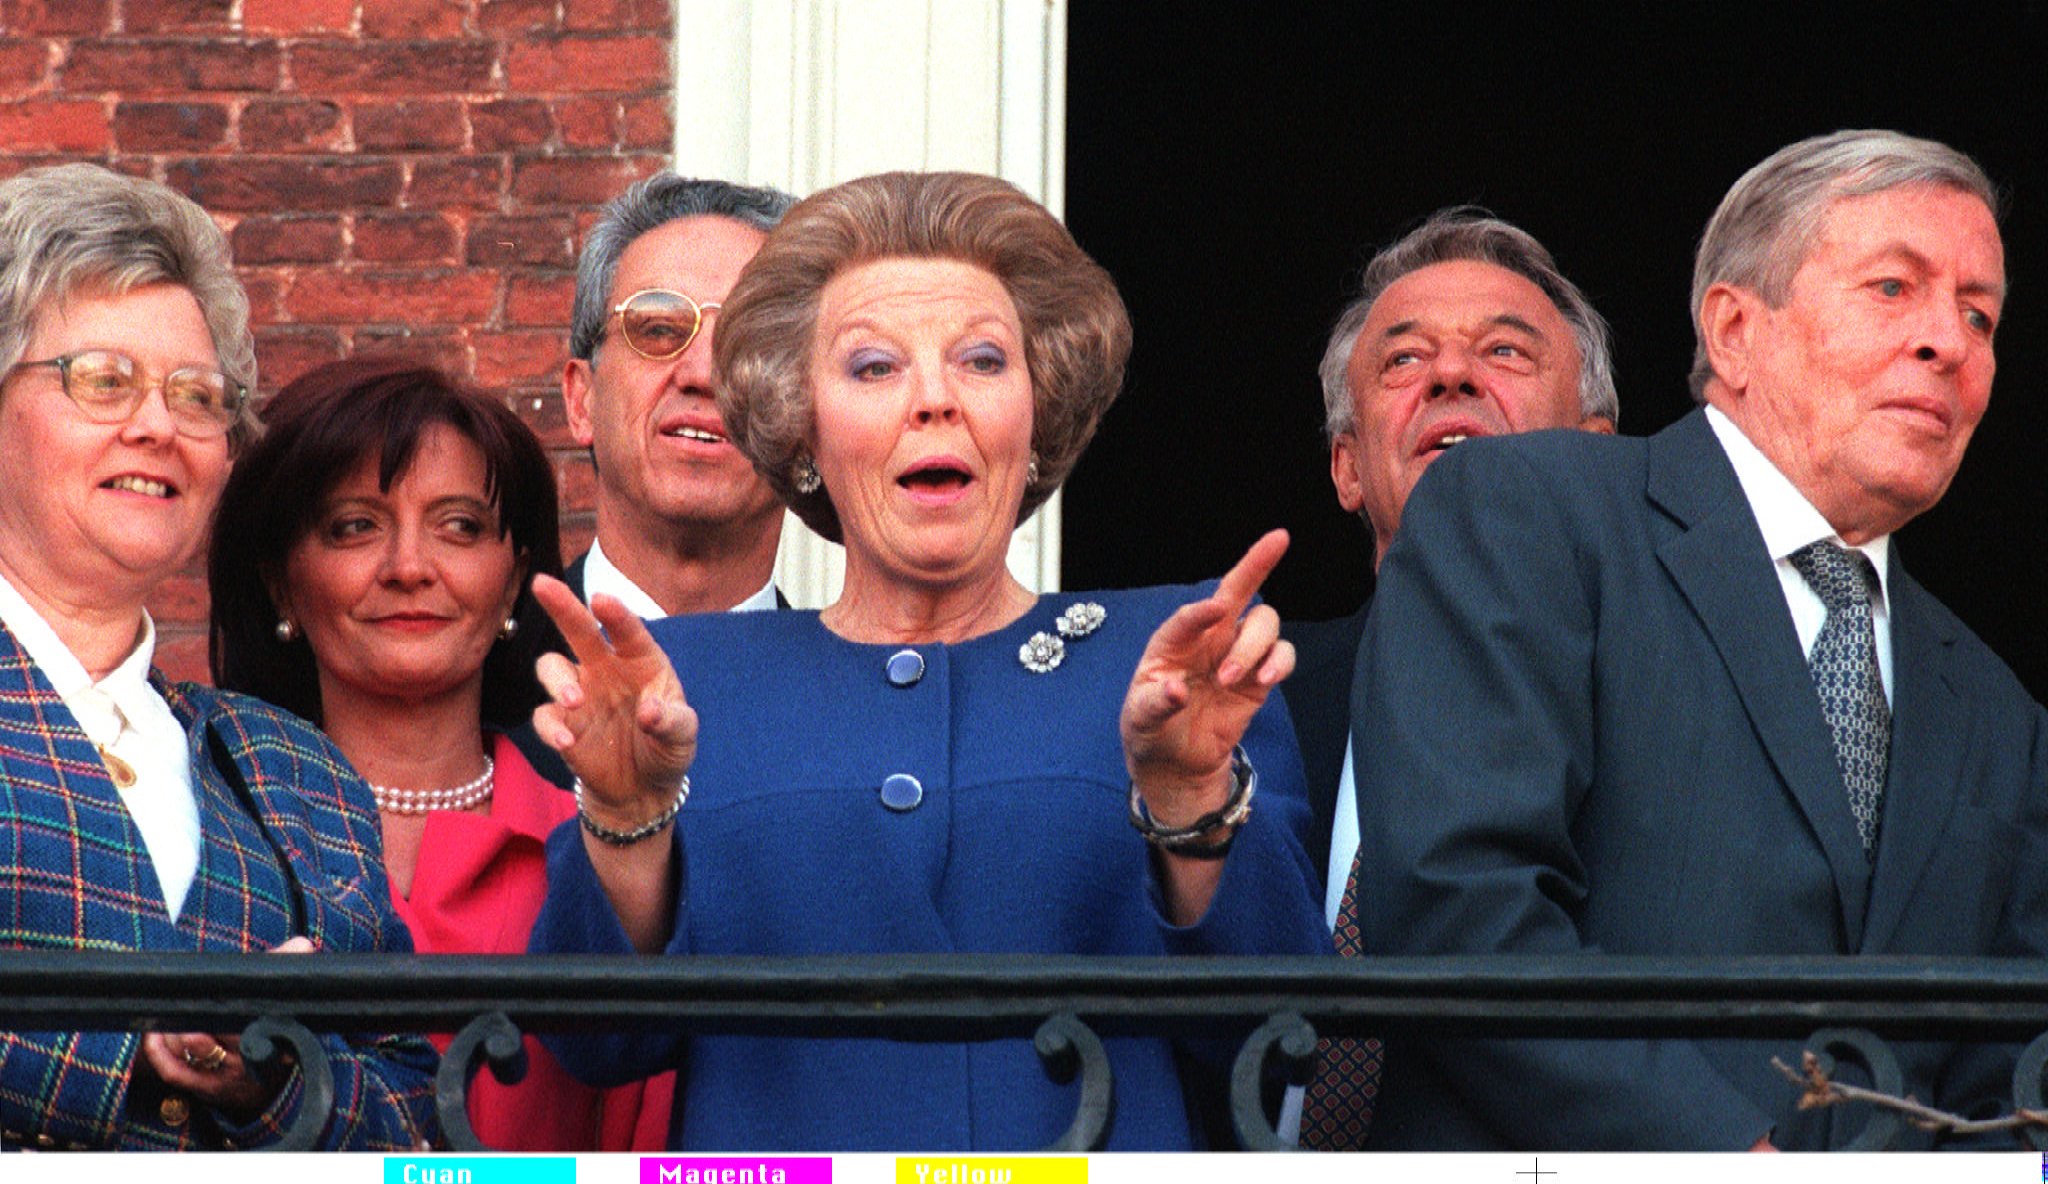 1997-04-07 20:16:56 Ter afsluiting van de EU-bijeenkomst met de Europese ministers van Buitenlandse Zaken en de RIO-groep ontving koningin Beatrix samen met prins Claus (r) de deelnemers op het paleis Huis ten Bosch in Den Haag. Voor een groepsfoto kwamen de ministers even op het bordes.